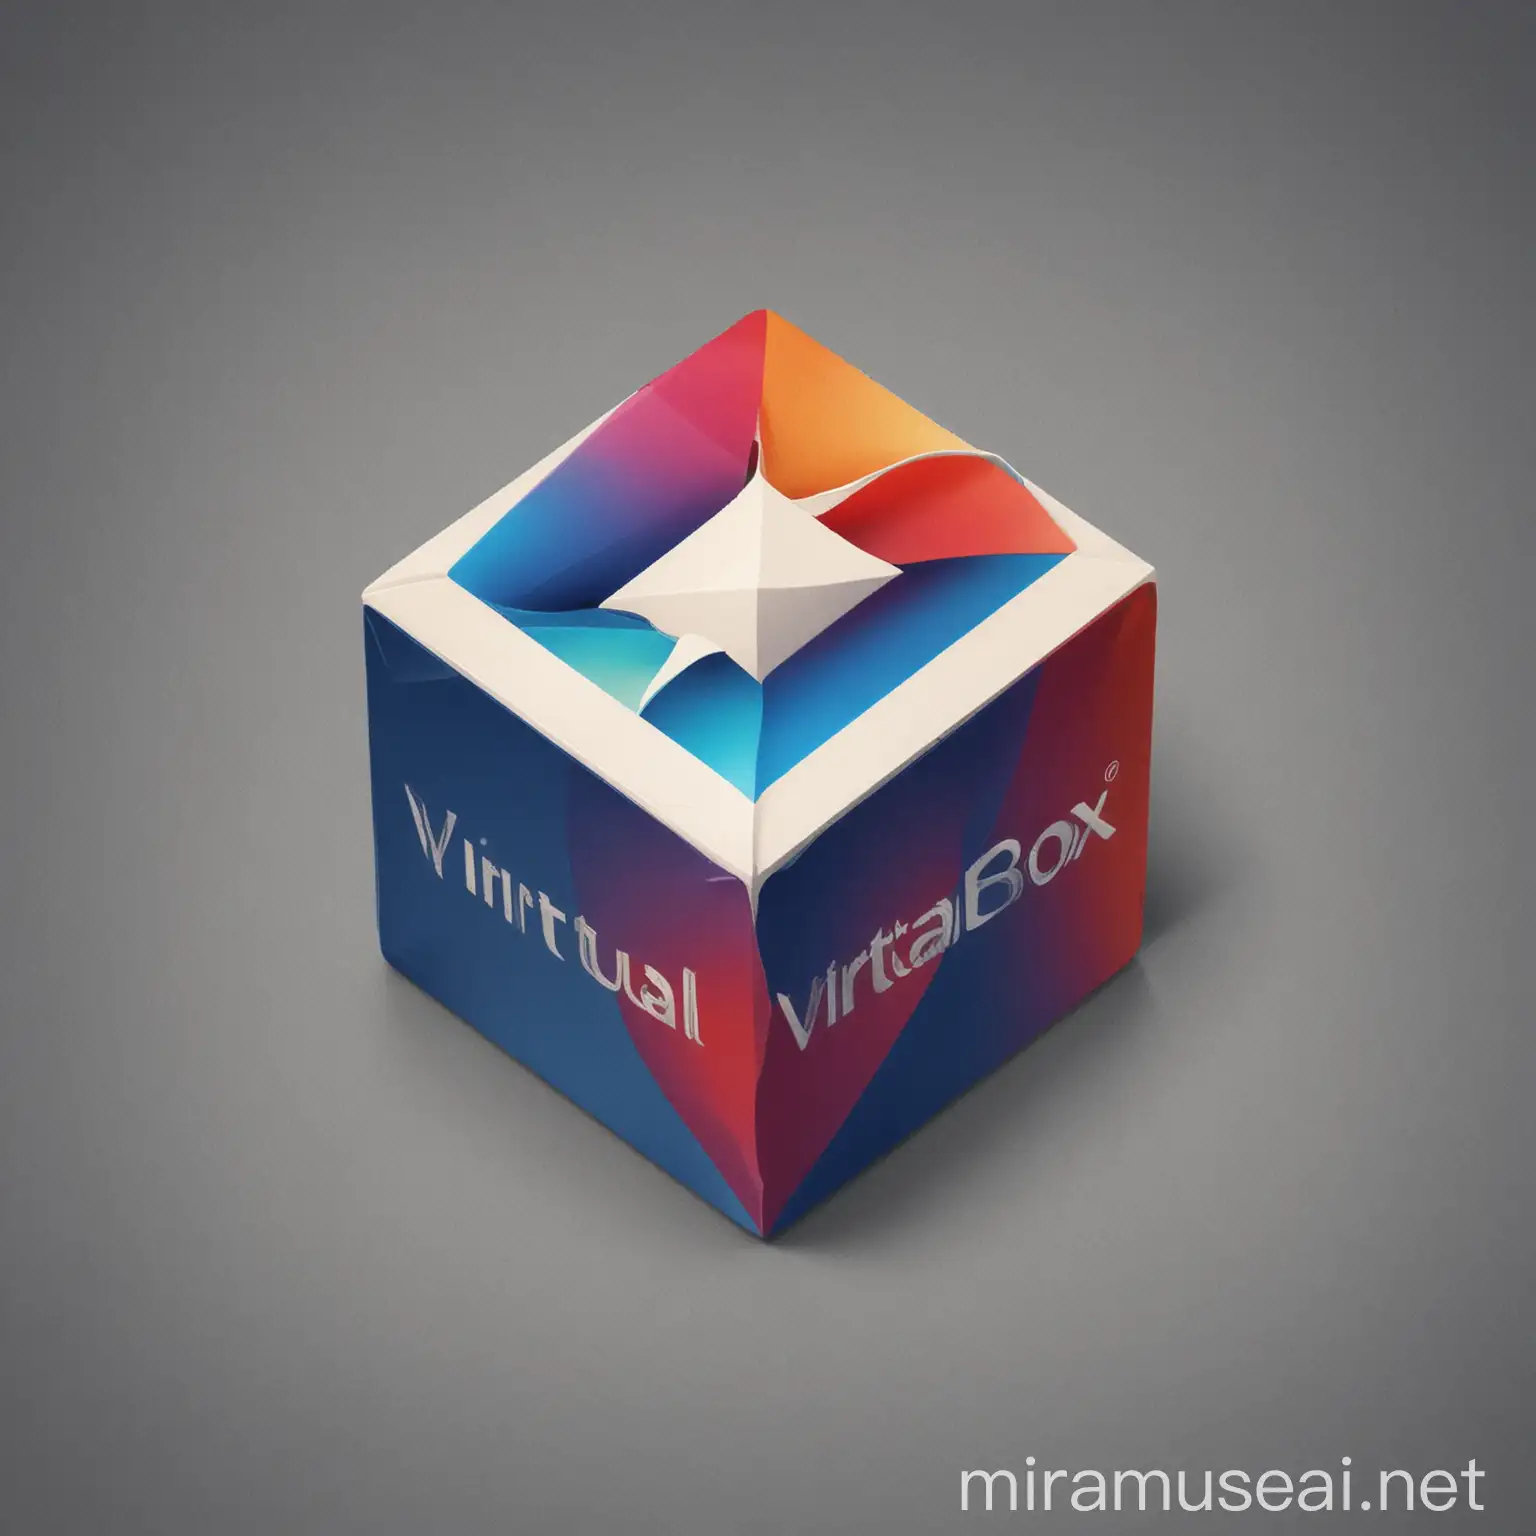 VirtualBox Logo in Enhanced Realism